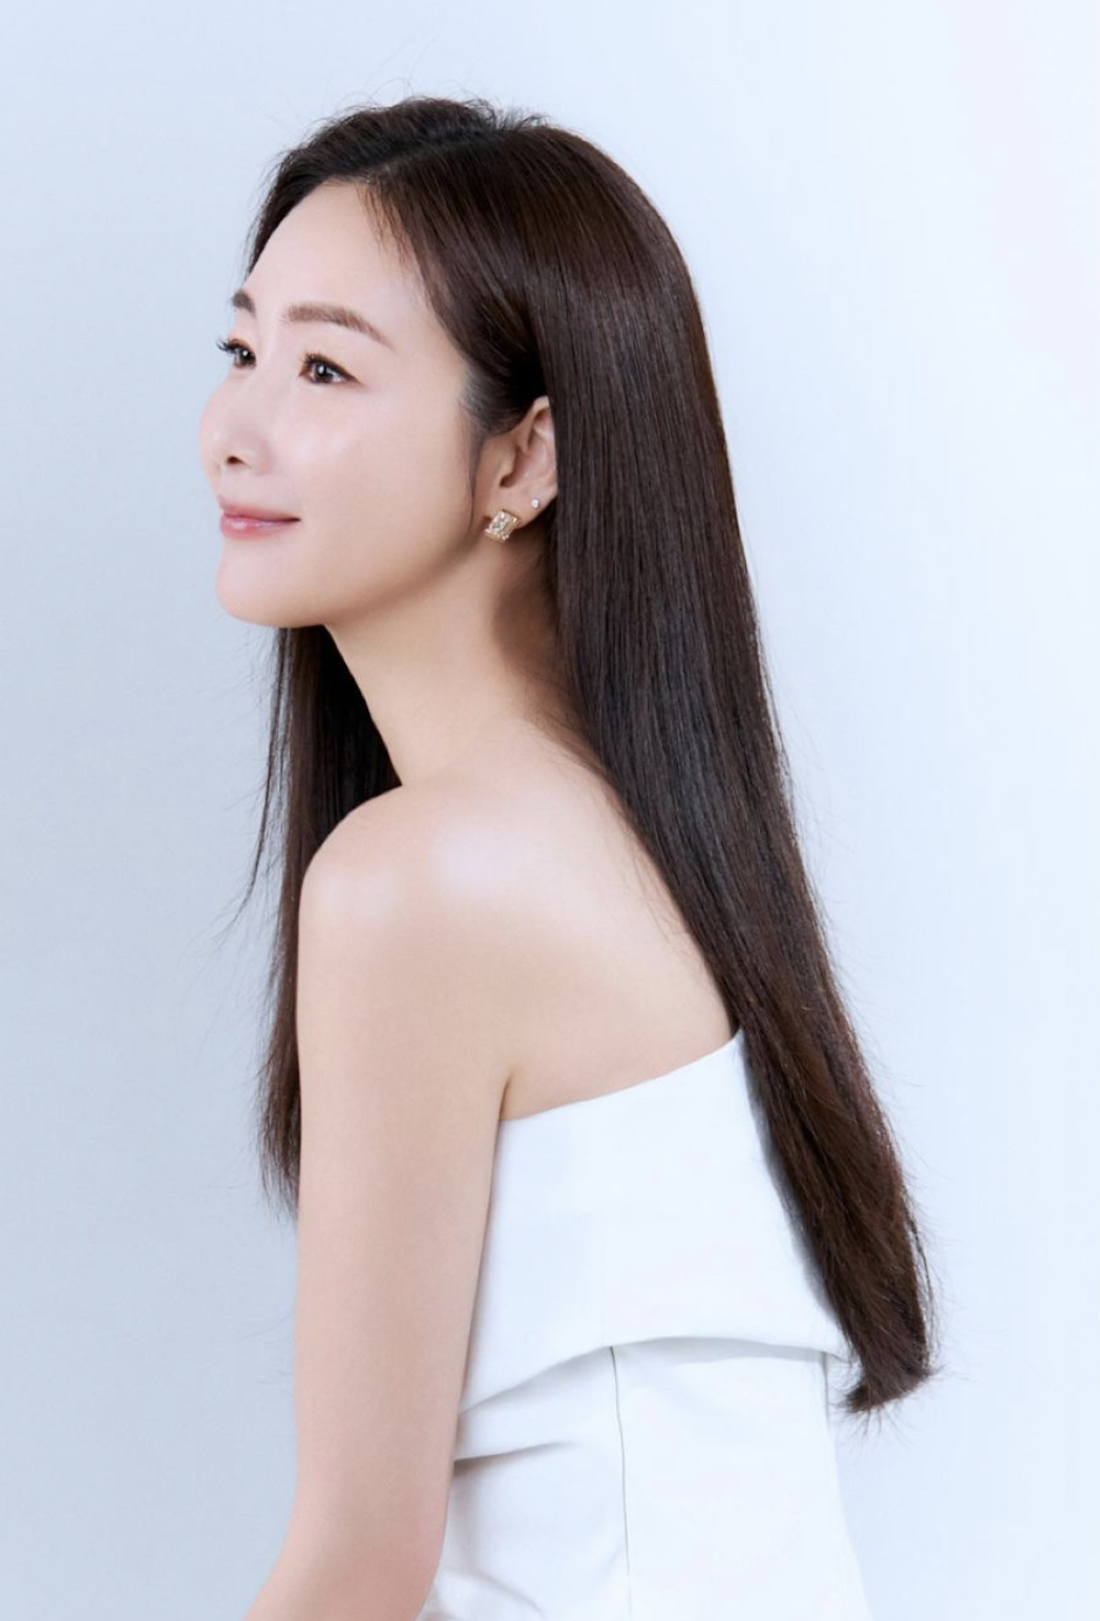 ‘Nữ hoàng nước mắt’ Choi Ji Woo xinh đẹp trong trẻo ở tuổi 48 - Ảnh 6.